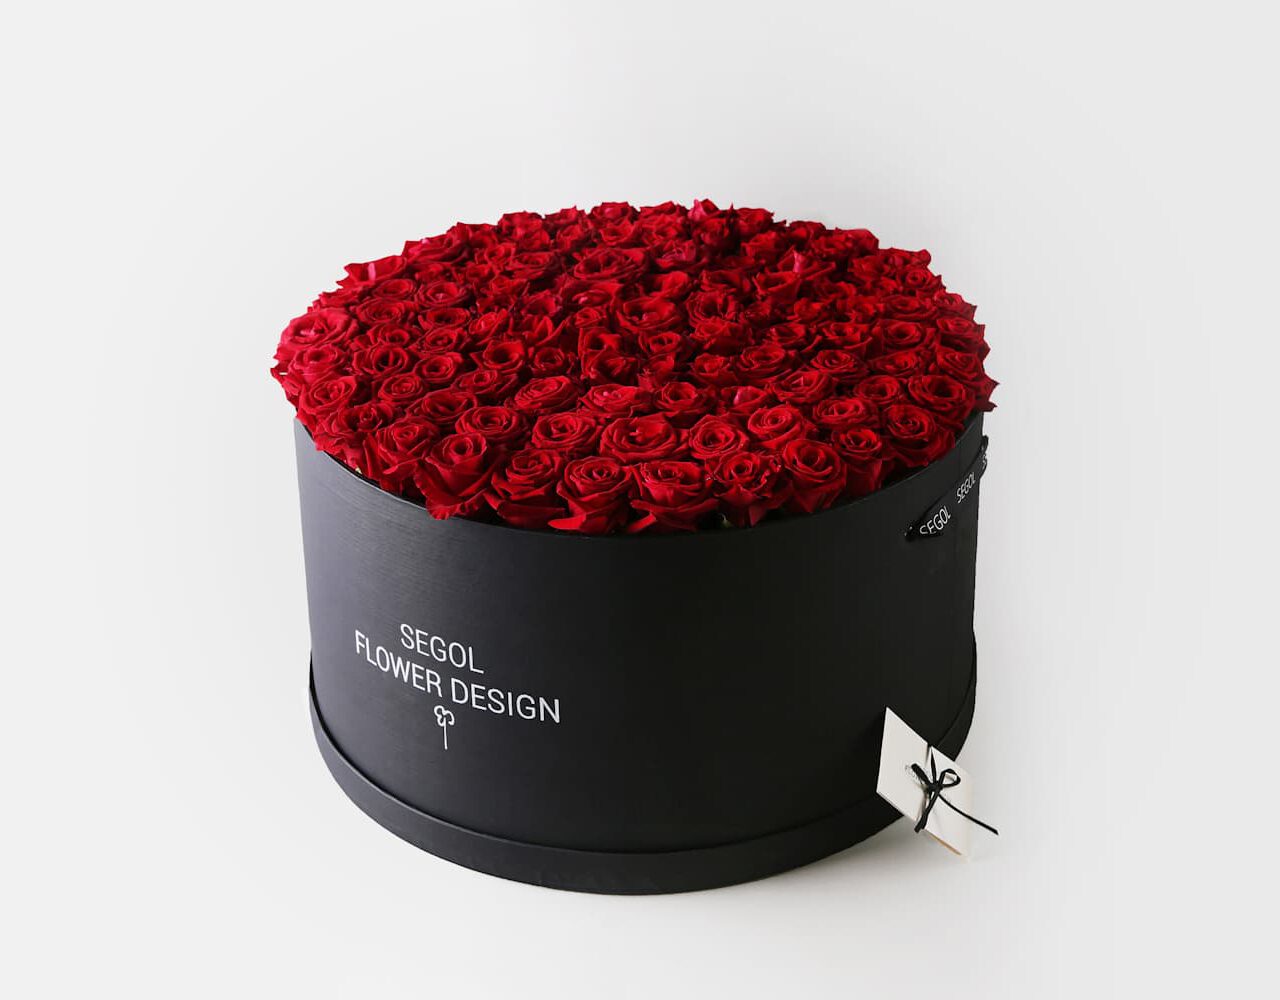 Jumbo Red Rose - שחור